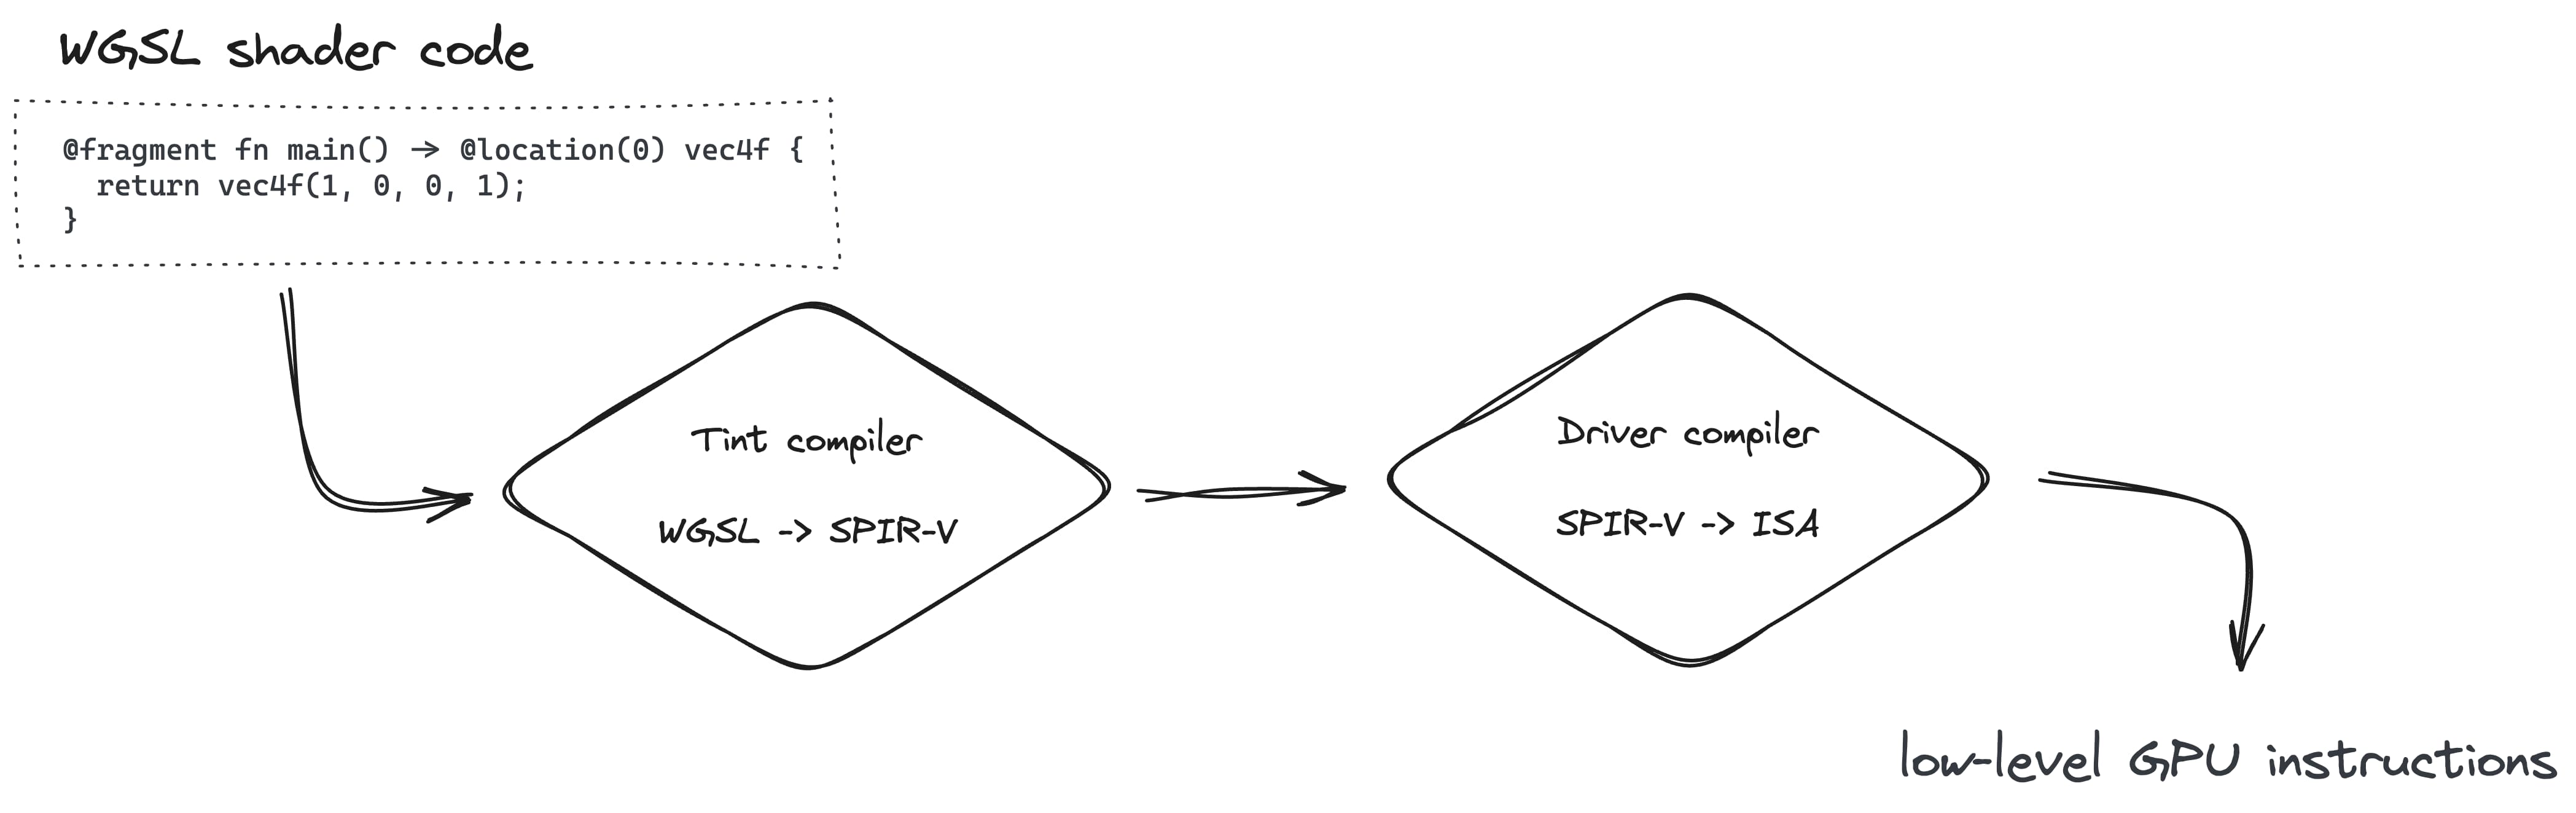 ביצירת צינור עיבוד נתונים מתבצע המרה של WGSL ל-SPIR-V באמצעות מהדר Tint, ולאחר מכן ל-ISA באמצעות המהדר של מנהל ההתקן.